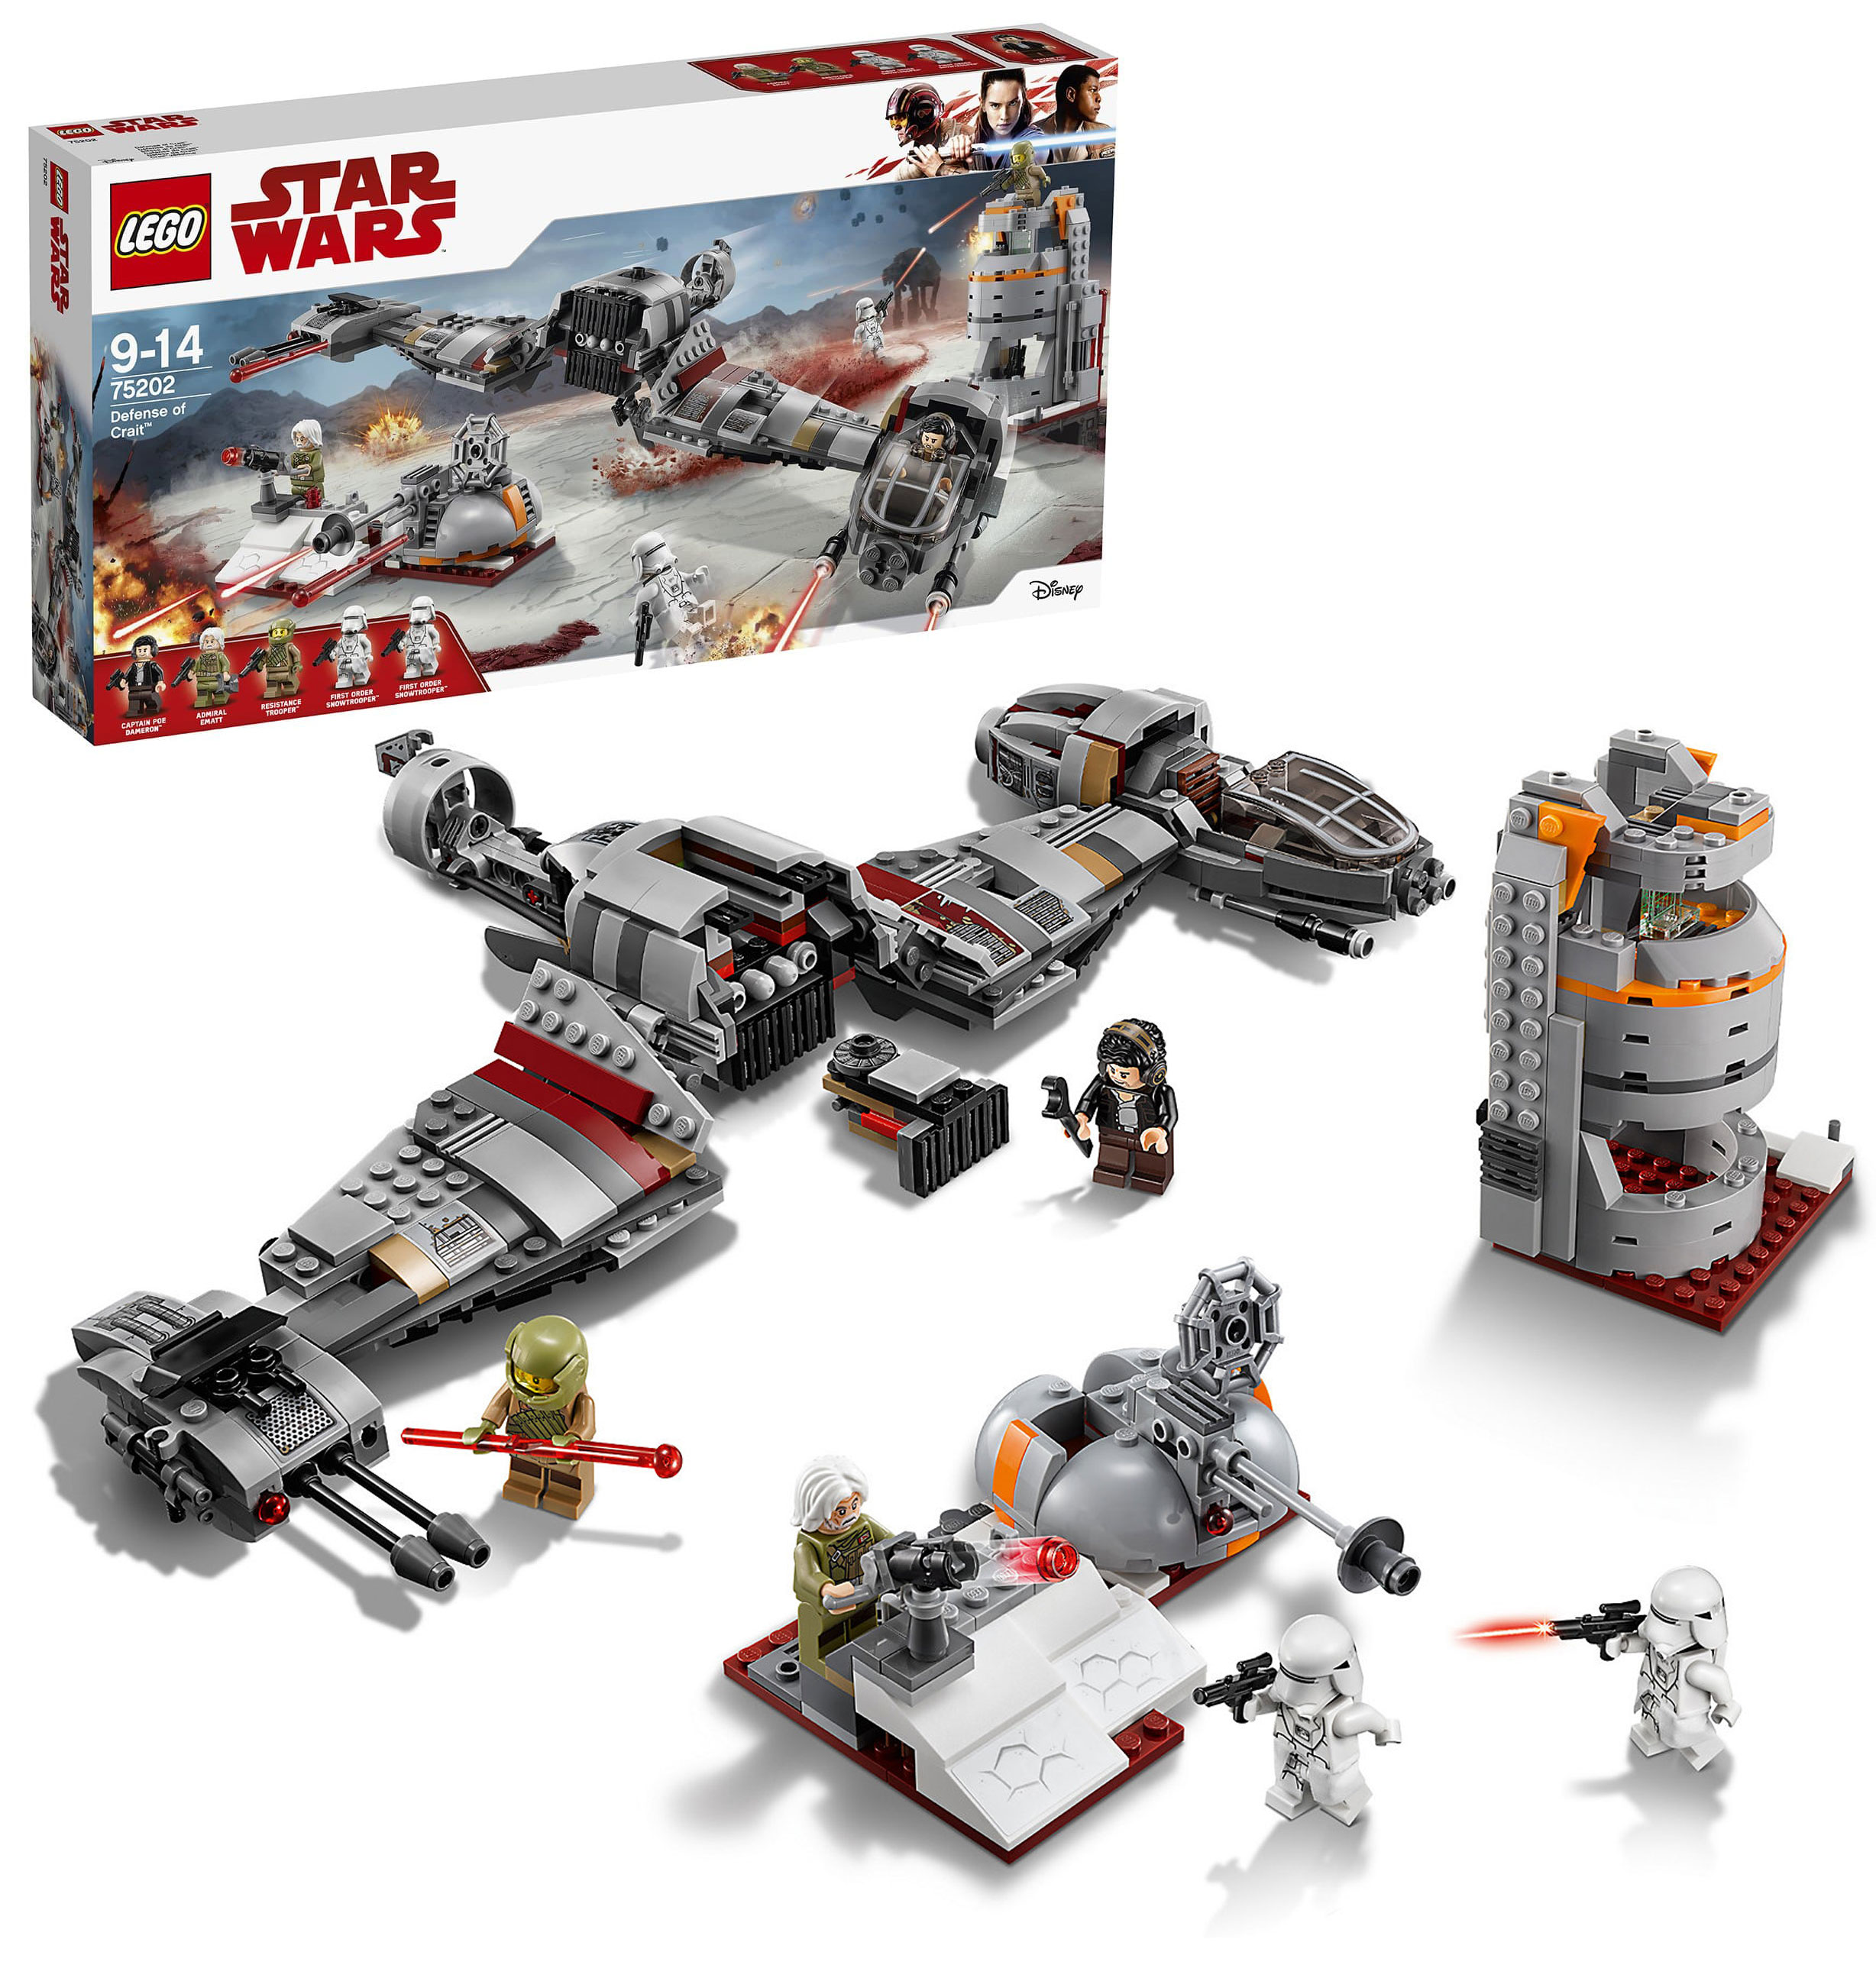 Конструктор LEGO Star Wars 75202 Защита Крайта